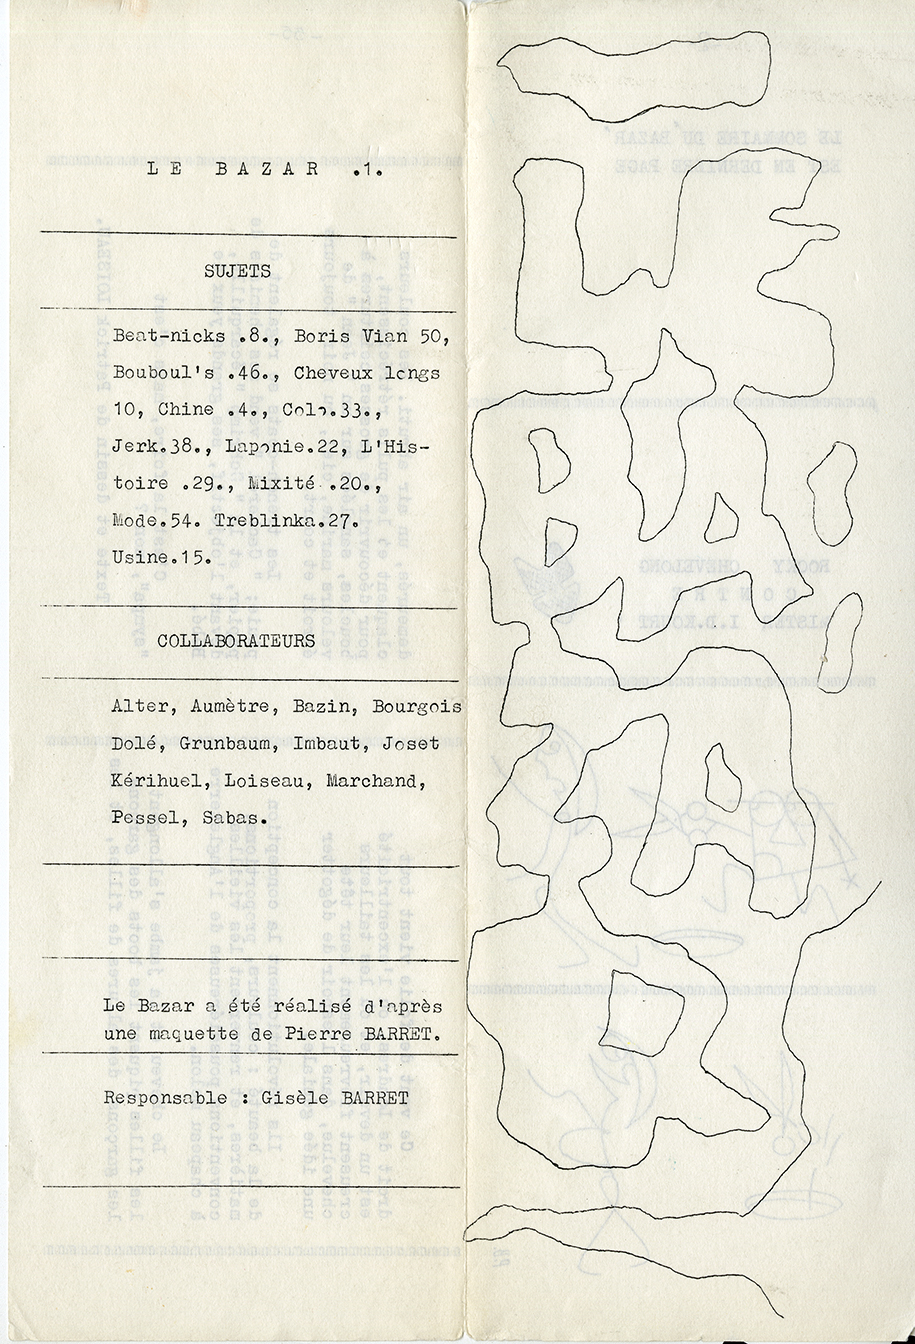 Le Bazar vol. 1. Page couverture et verso. [entre 1964 et 1966]. Archives UdeM, P0419-D-D0002